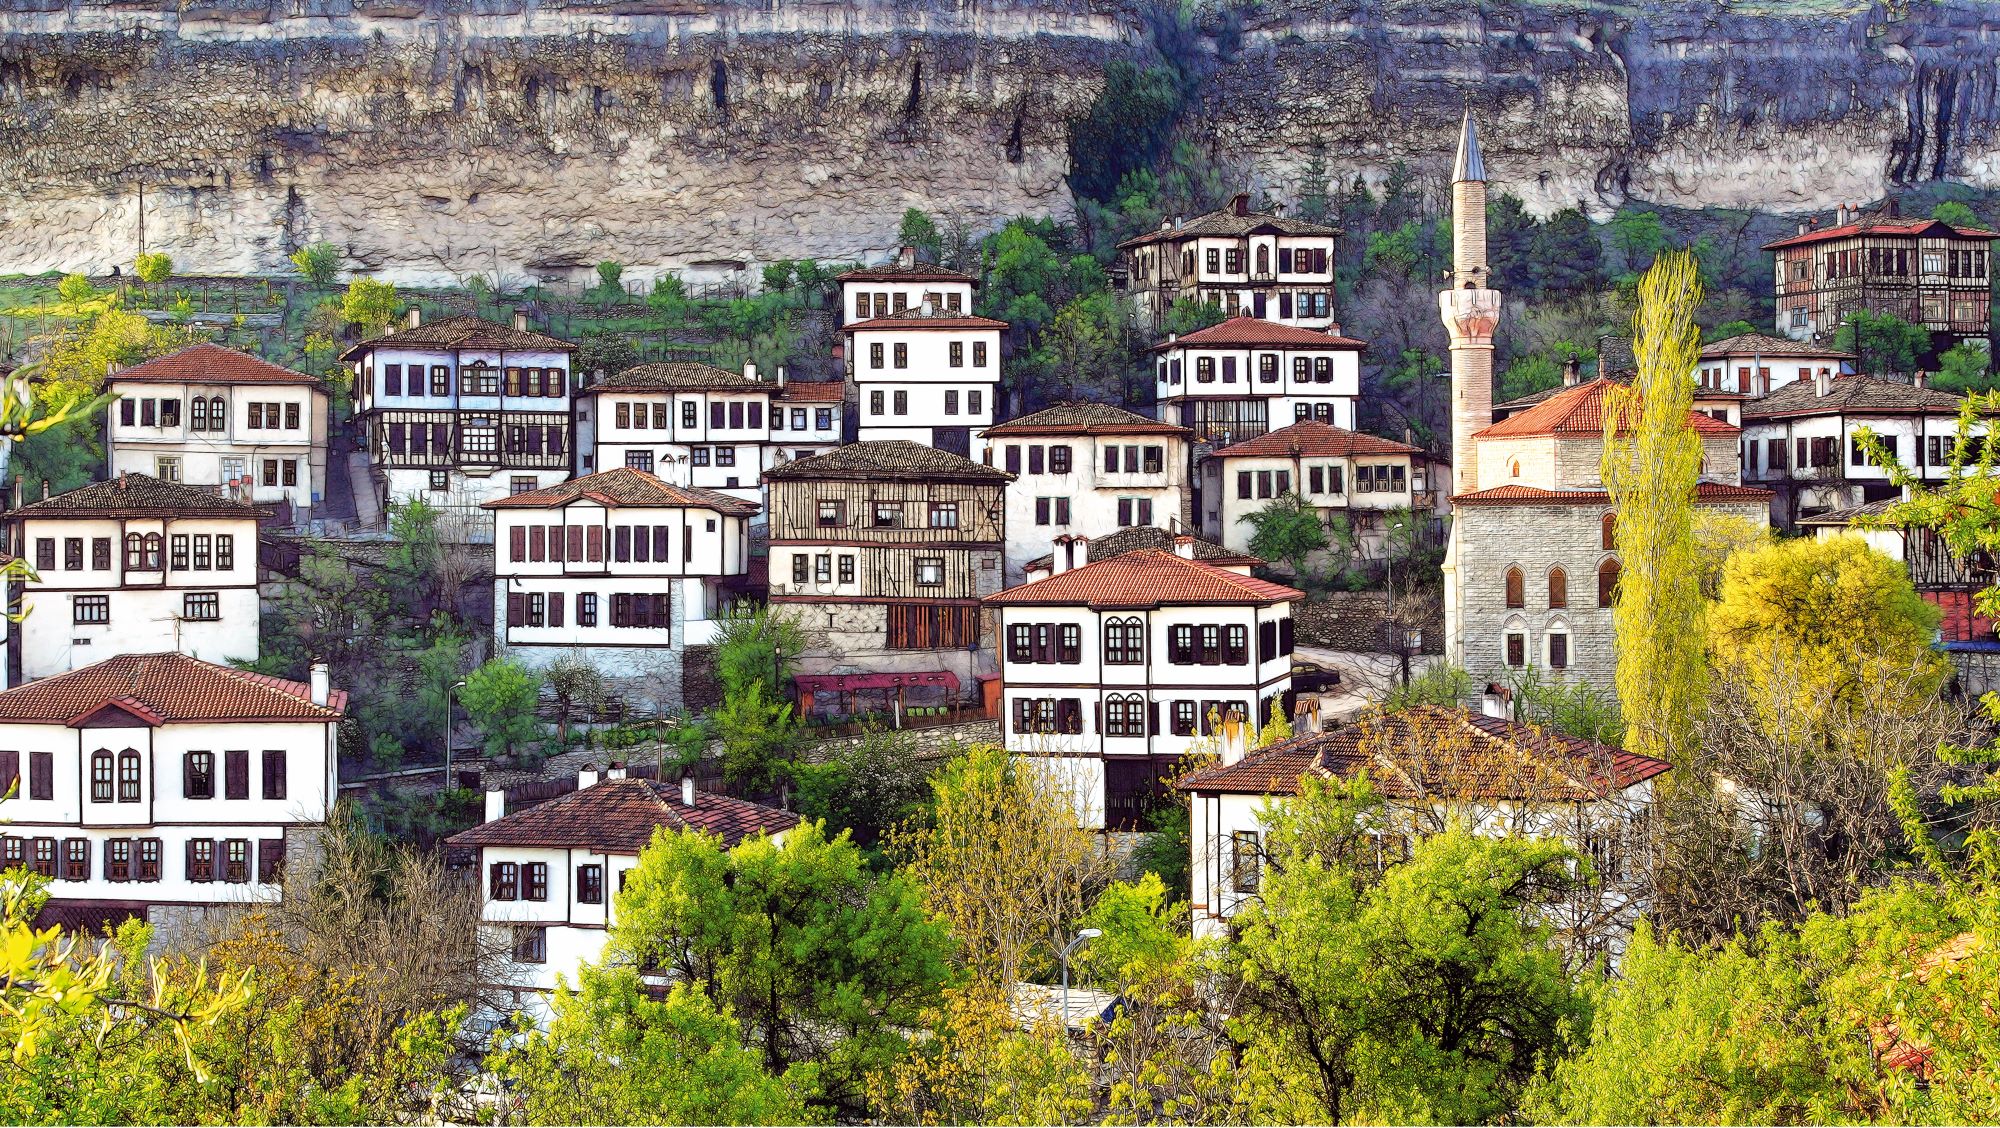 土耳其風景如畫的百年古城番紅花城和達達伊入選國際慢城